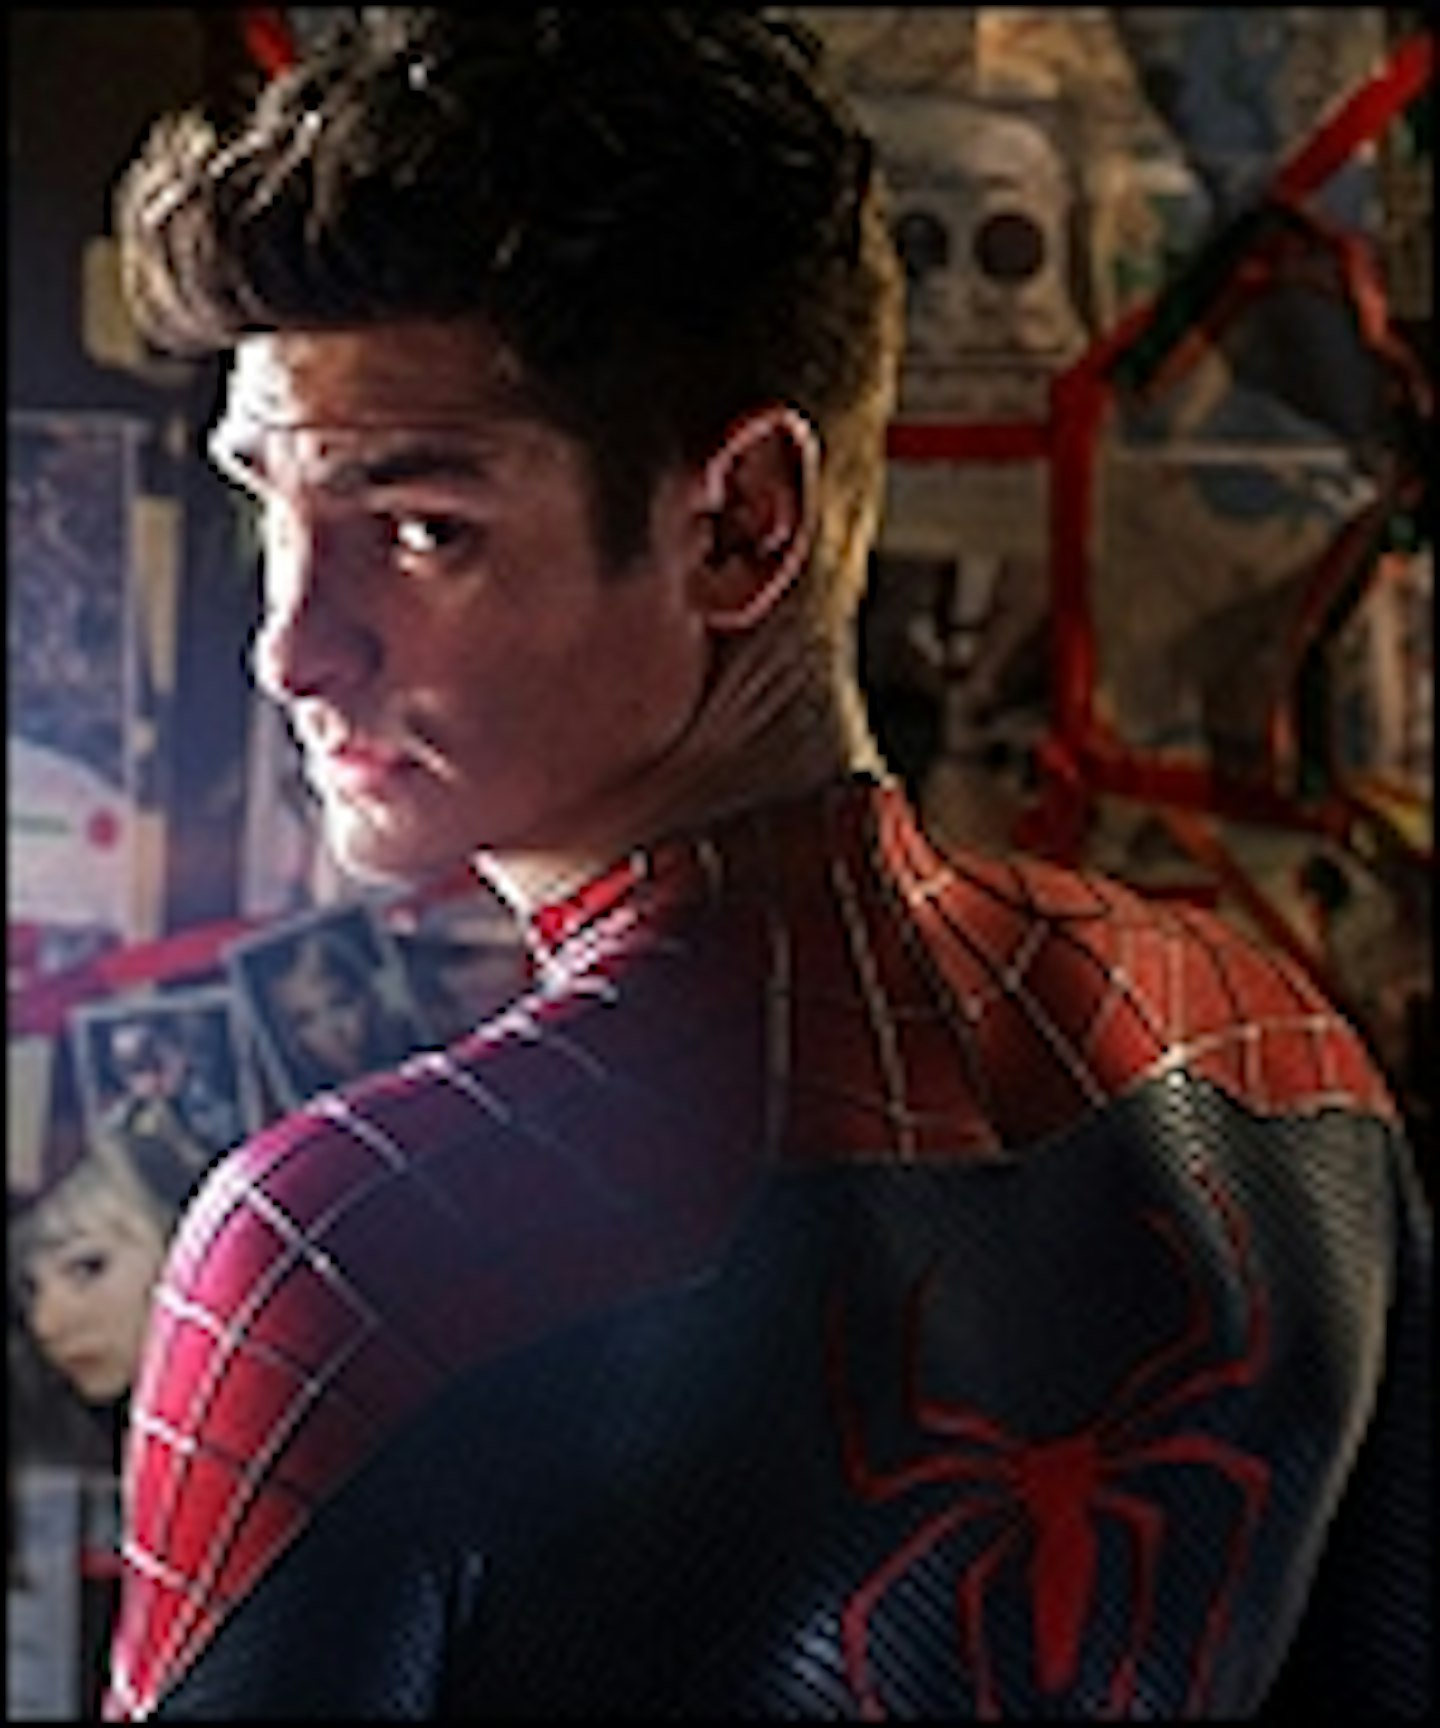 Final Amazing Spider-Man 2 Trailer Lands